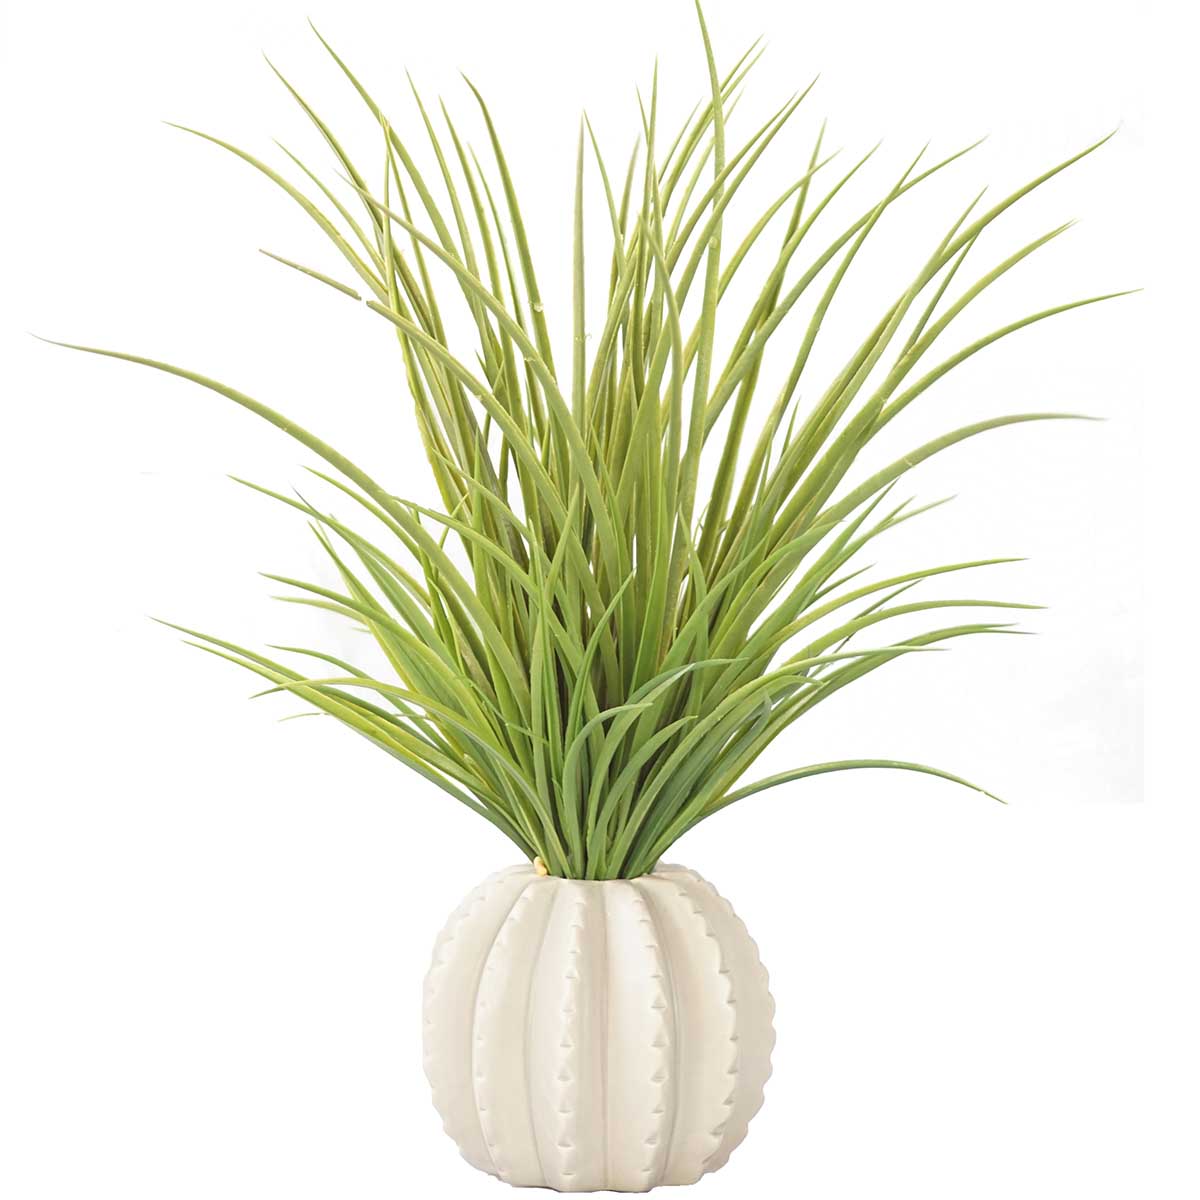 Vha102470 Plastic Grass In Ceramic Vase, Taupe